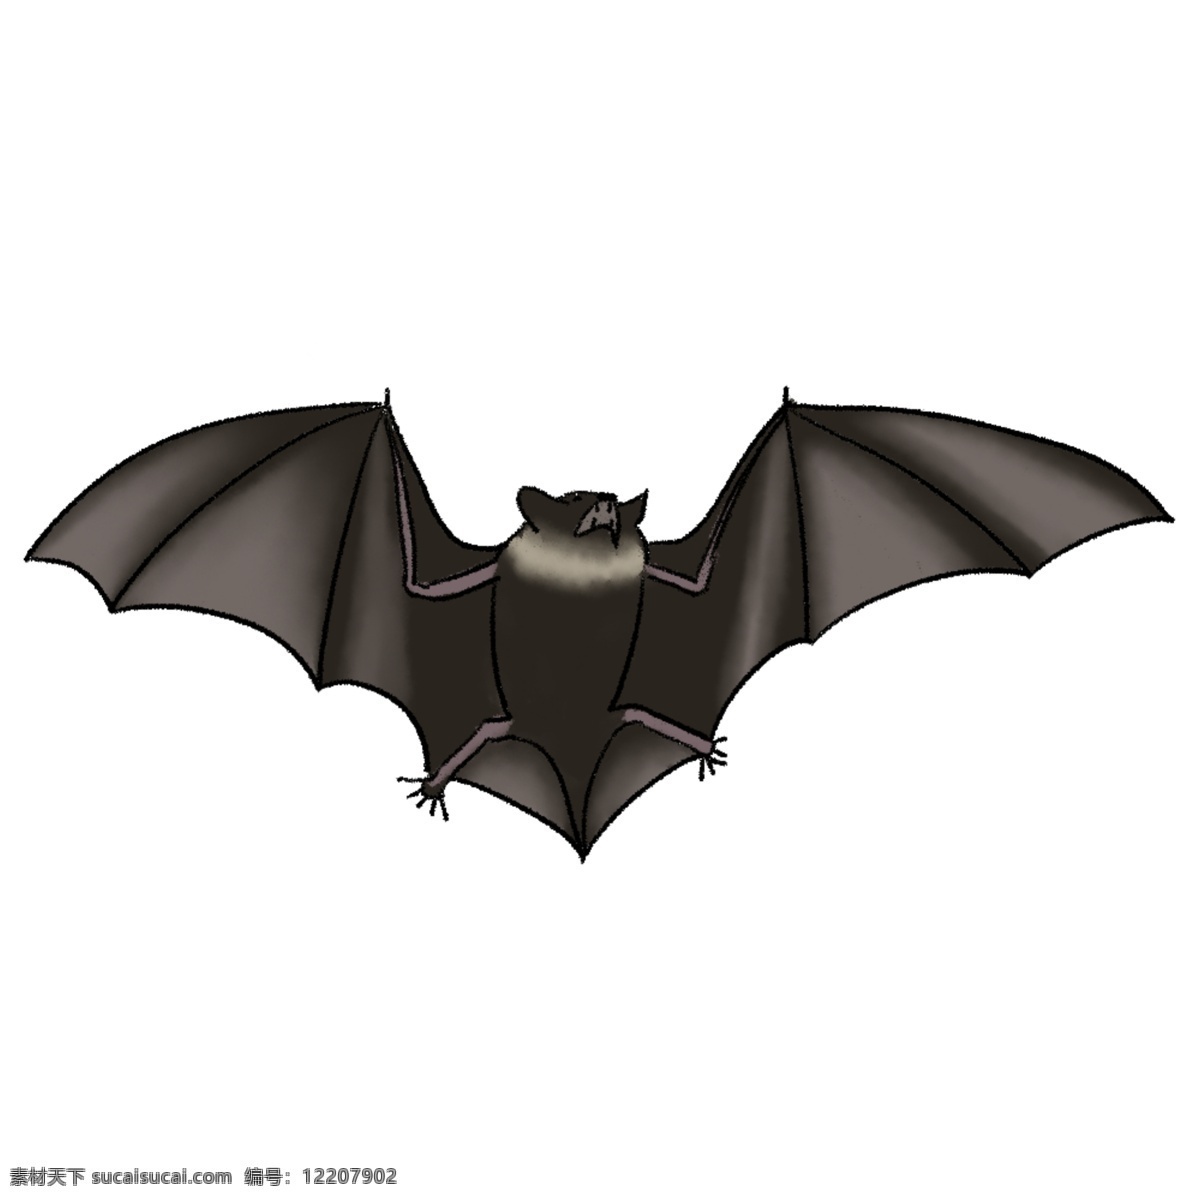 生物 蝙蝠插画 蝙蝠手绘 动物 简笔画 幼儿识动物 蝙蝠简笔画 小动物 黑蝙蝠 小动物头饰 野生动物 生物世界